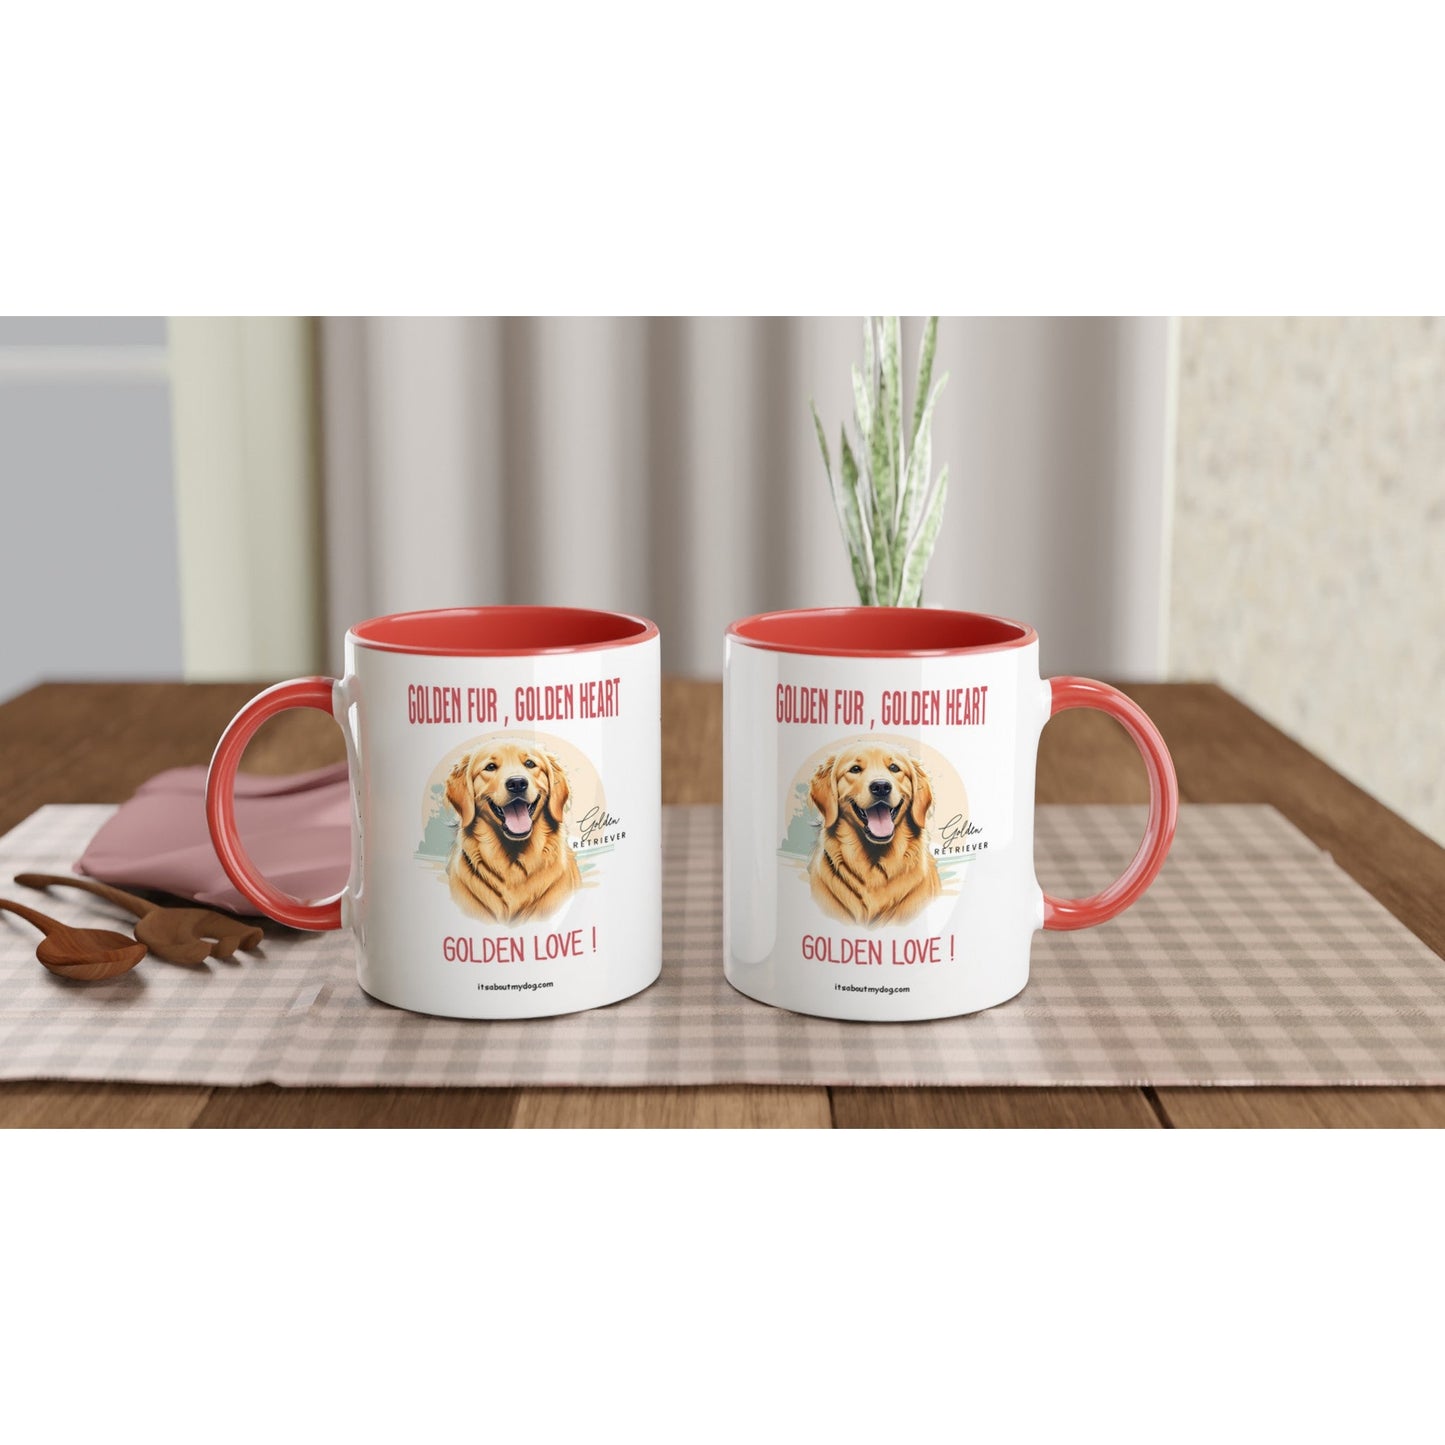 Golden Retriever-11oz Ceramic Mug with Color Inside17.99-(FREE Delivery) Shop now at itsaboutmydog.com, christmas dog mug, dog mug, dog mugs, dog mugs uk, Golden Retriever Gifts, golden retriever puppies scotland, retriever dog mug